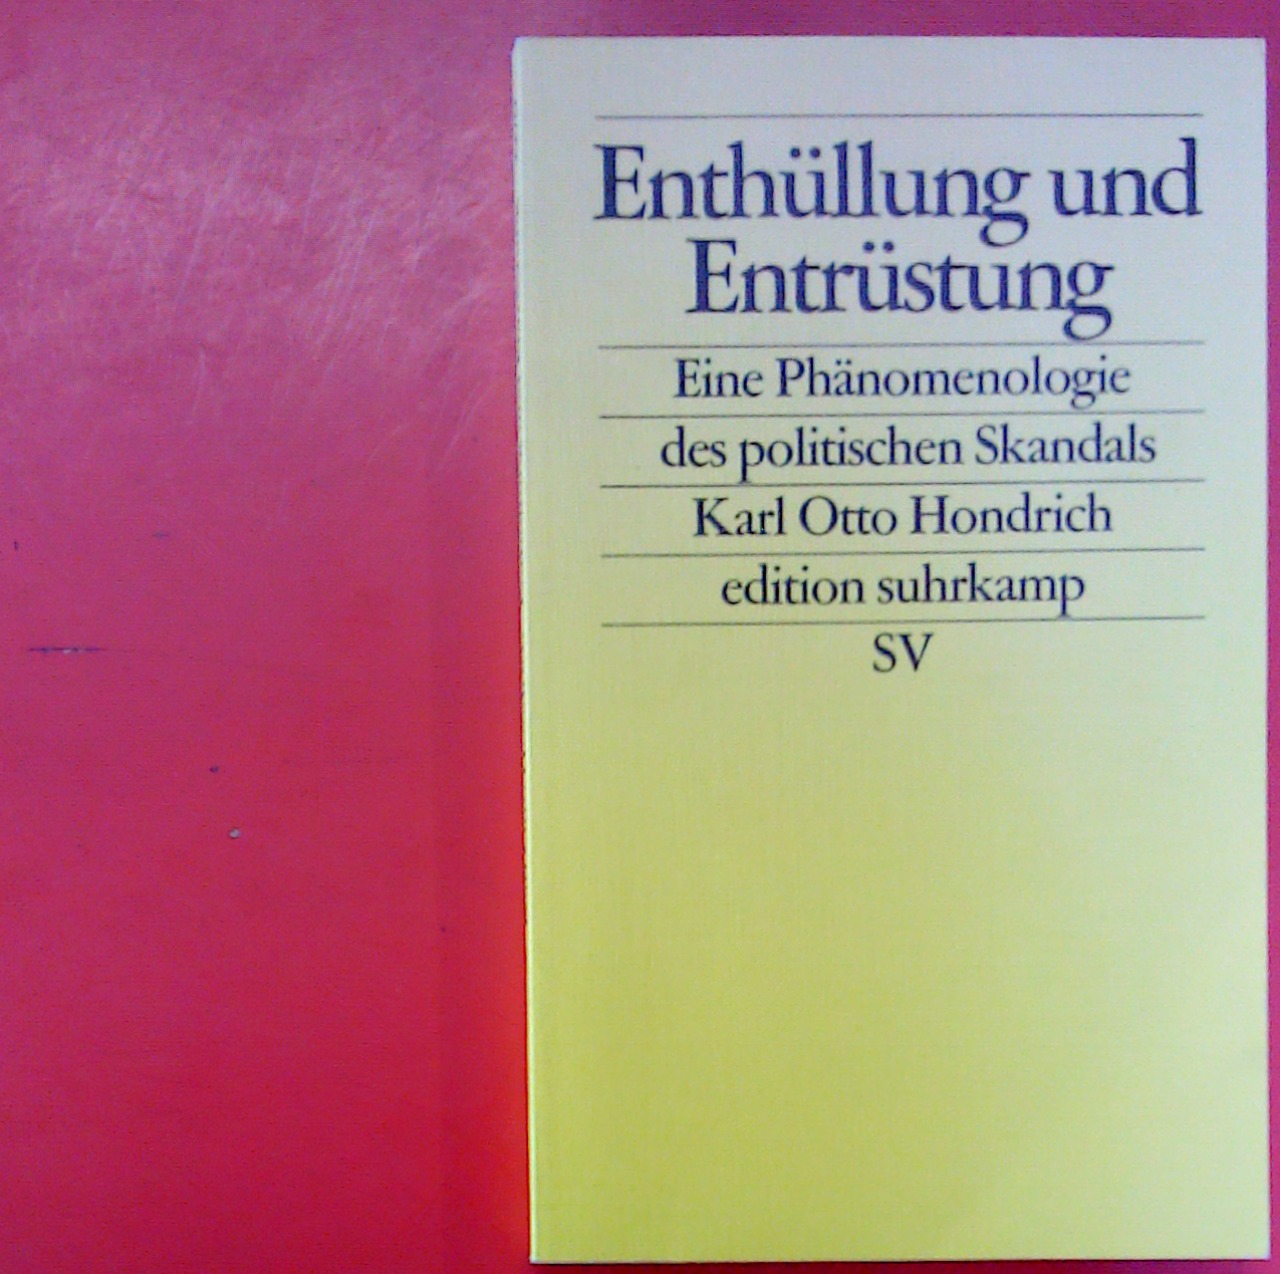 Enthüllung und Entrüstung - Eine Phänomenologie des politischen Skandals (edition suhrkamp 2270) - Karl Otto Hondrich